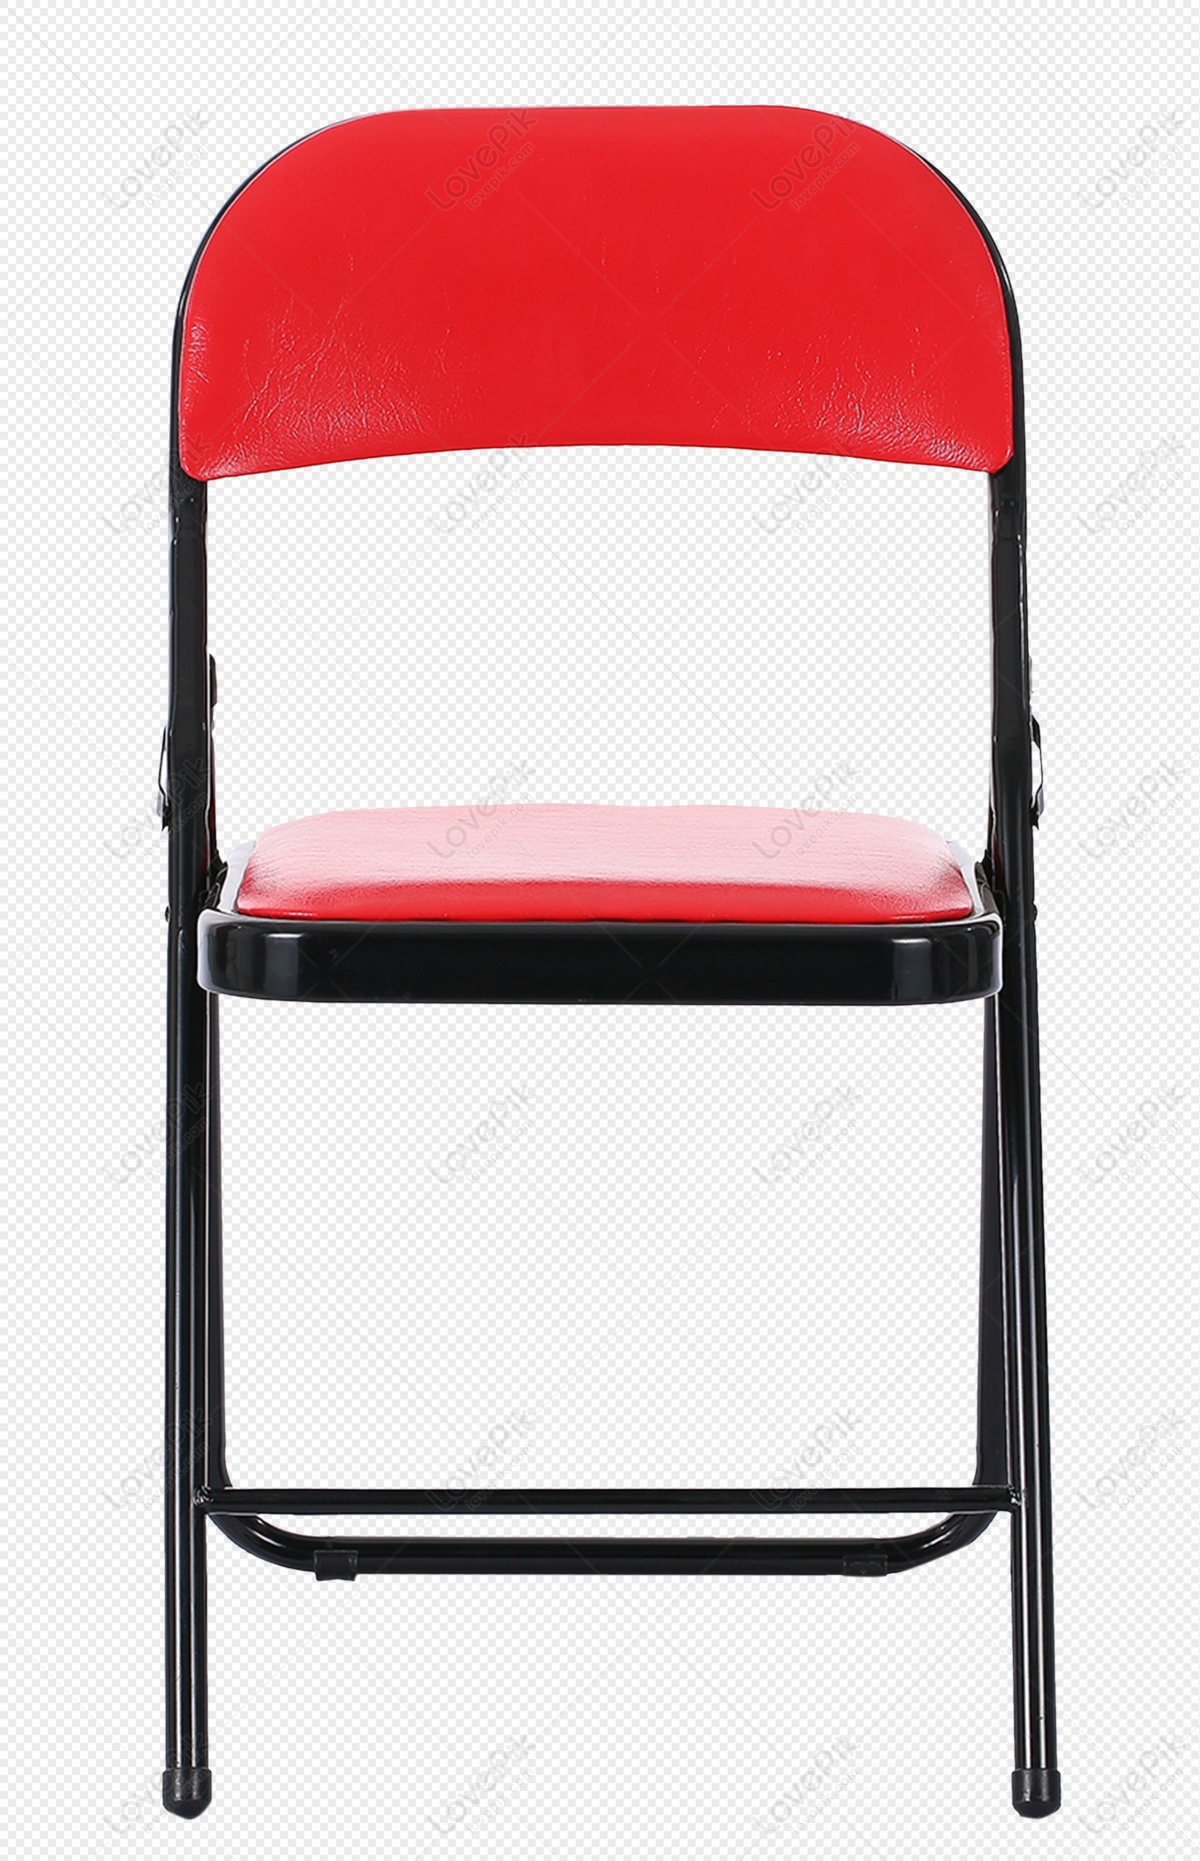 Cái ghế màu trắng: Sự góp mặt của một chiếc ghế màu trắng sẽ làm cho không gian sống của bạn trở nên trang nhã, sang trọng hơn rất nhiều. Với phong cách trang nhã, tinh tế và đơn giản, chắc chắn sẽ là tâm điểm thu hút của người sử dụng. Nếu bạn đang tìm kiếm một chiếc ghế đẹp để trang trí cho không gian sống của mình thì hãy không ngại ngần mà xem ngay những mẫu ghế màu trắng đang làm mưa làm gió trên thị trường.